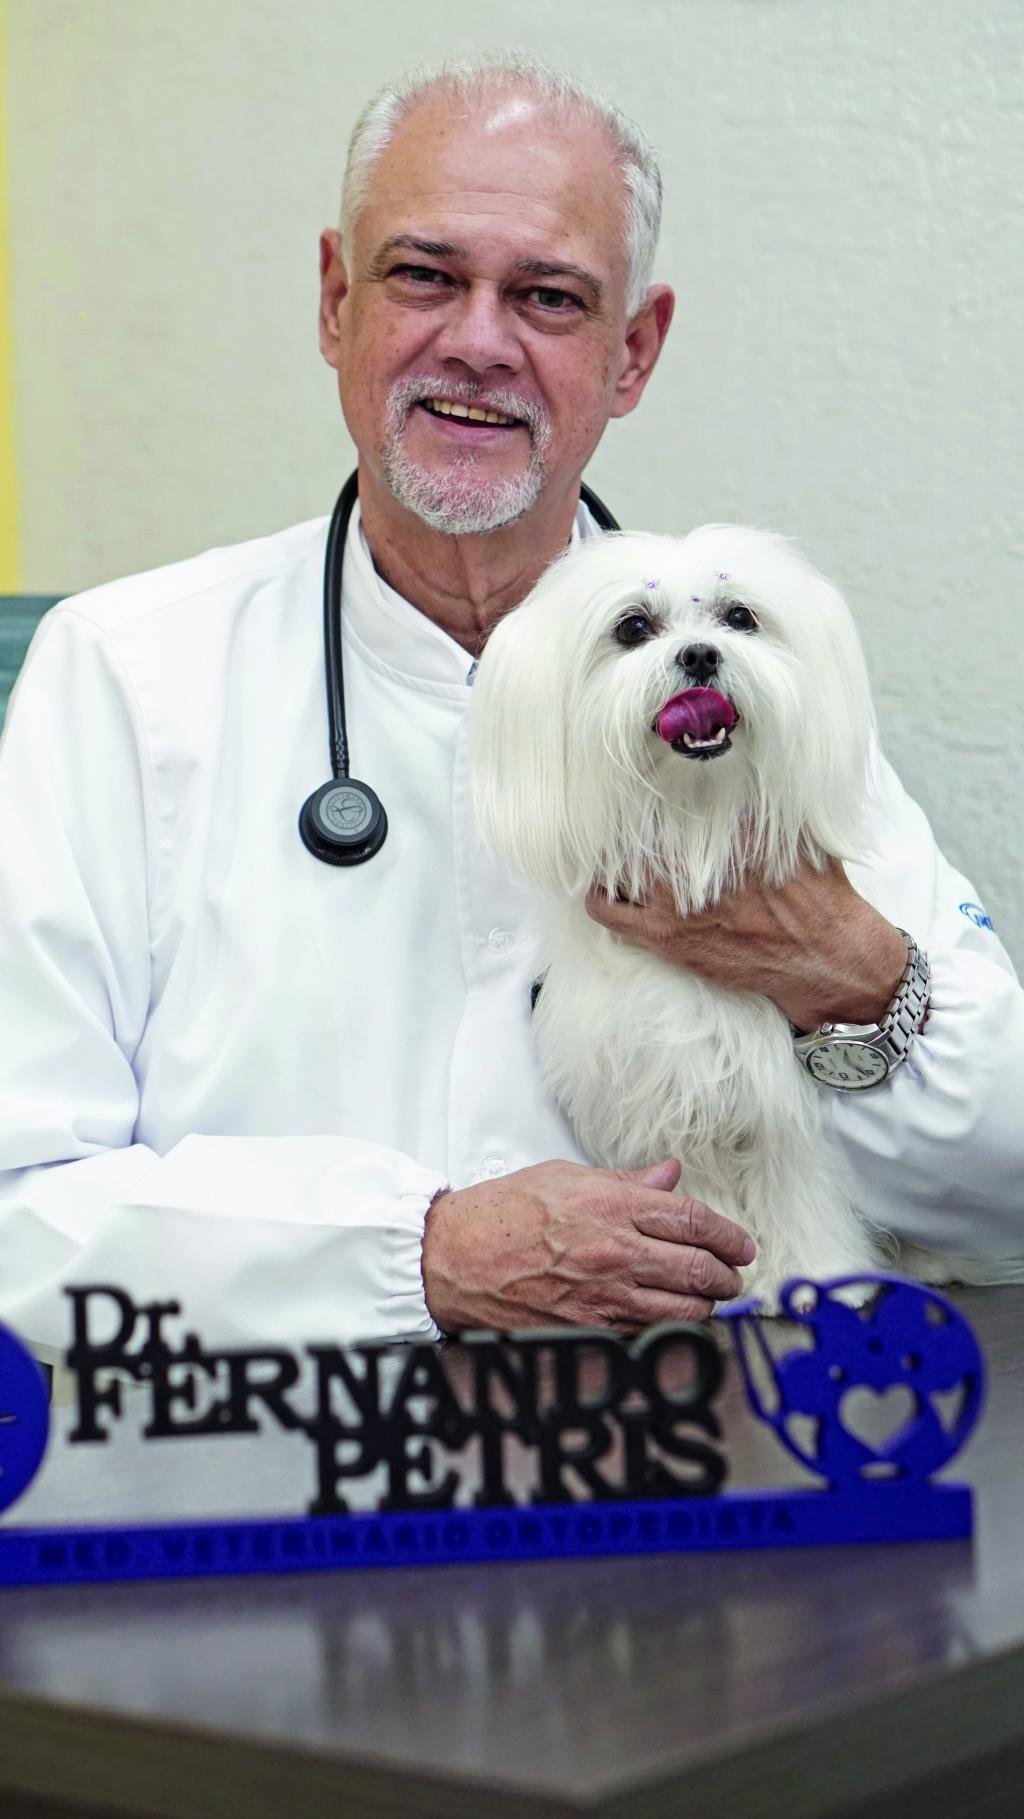 https://jornalnoroeste.com/uploads/images/2021/03/a-importancia-da-consulta-veterinaria-e-dos-exames-clinicos-para-saude-do-seu-melhor-amigo-de-4-patas-bg-3465-b6eb0.JPG